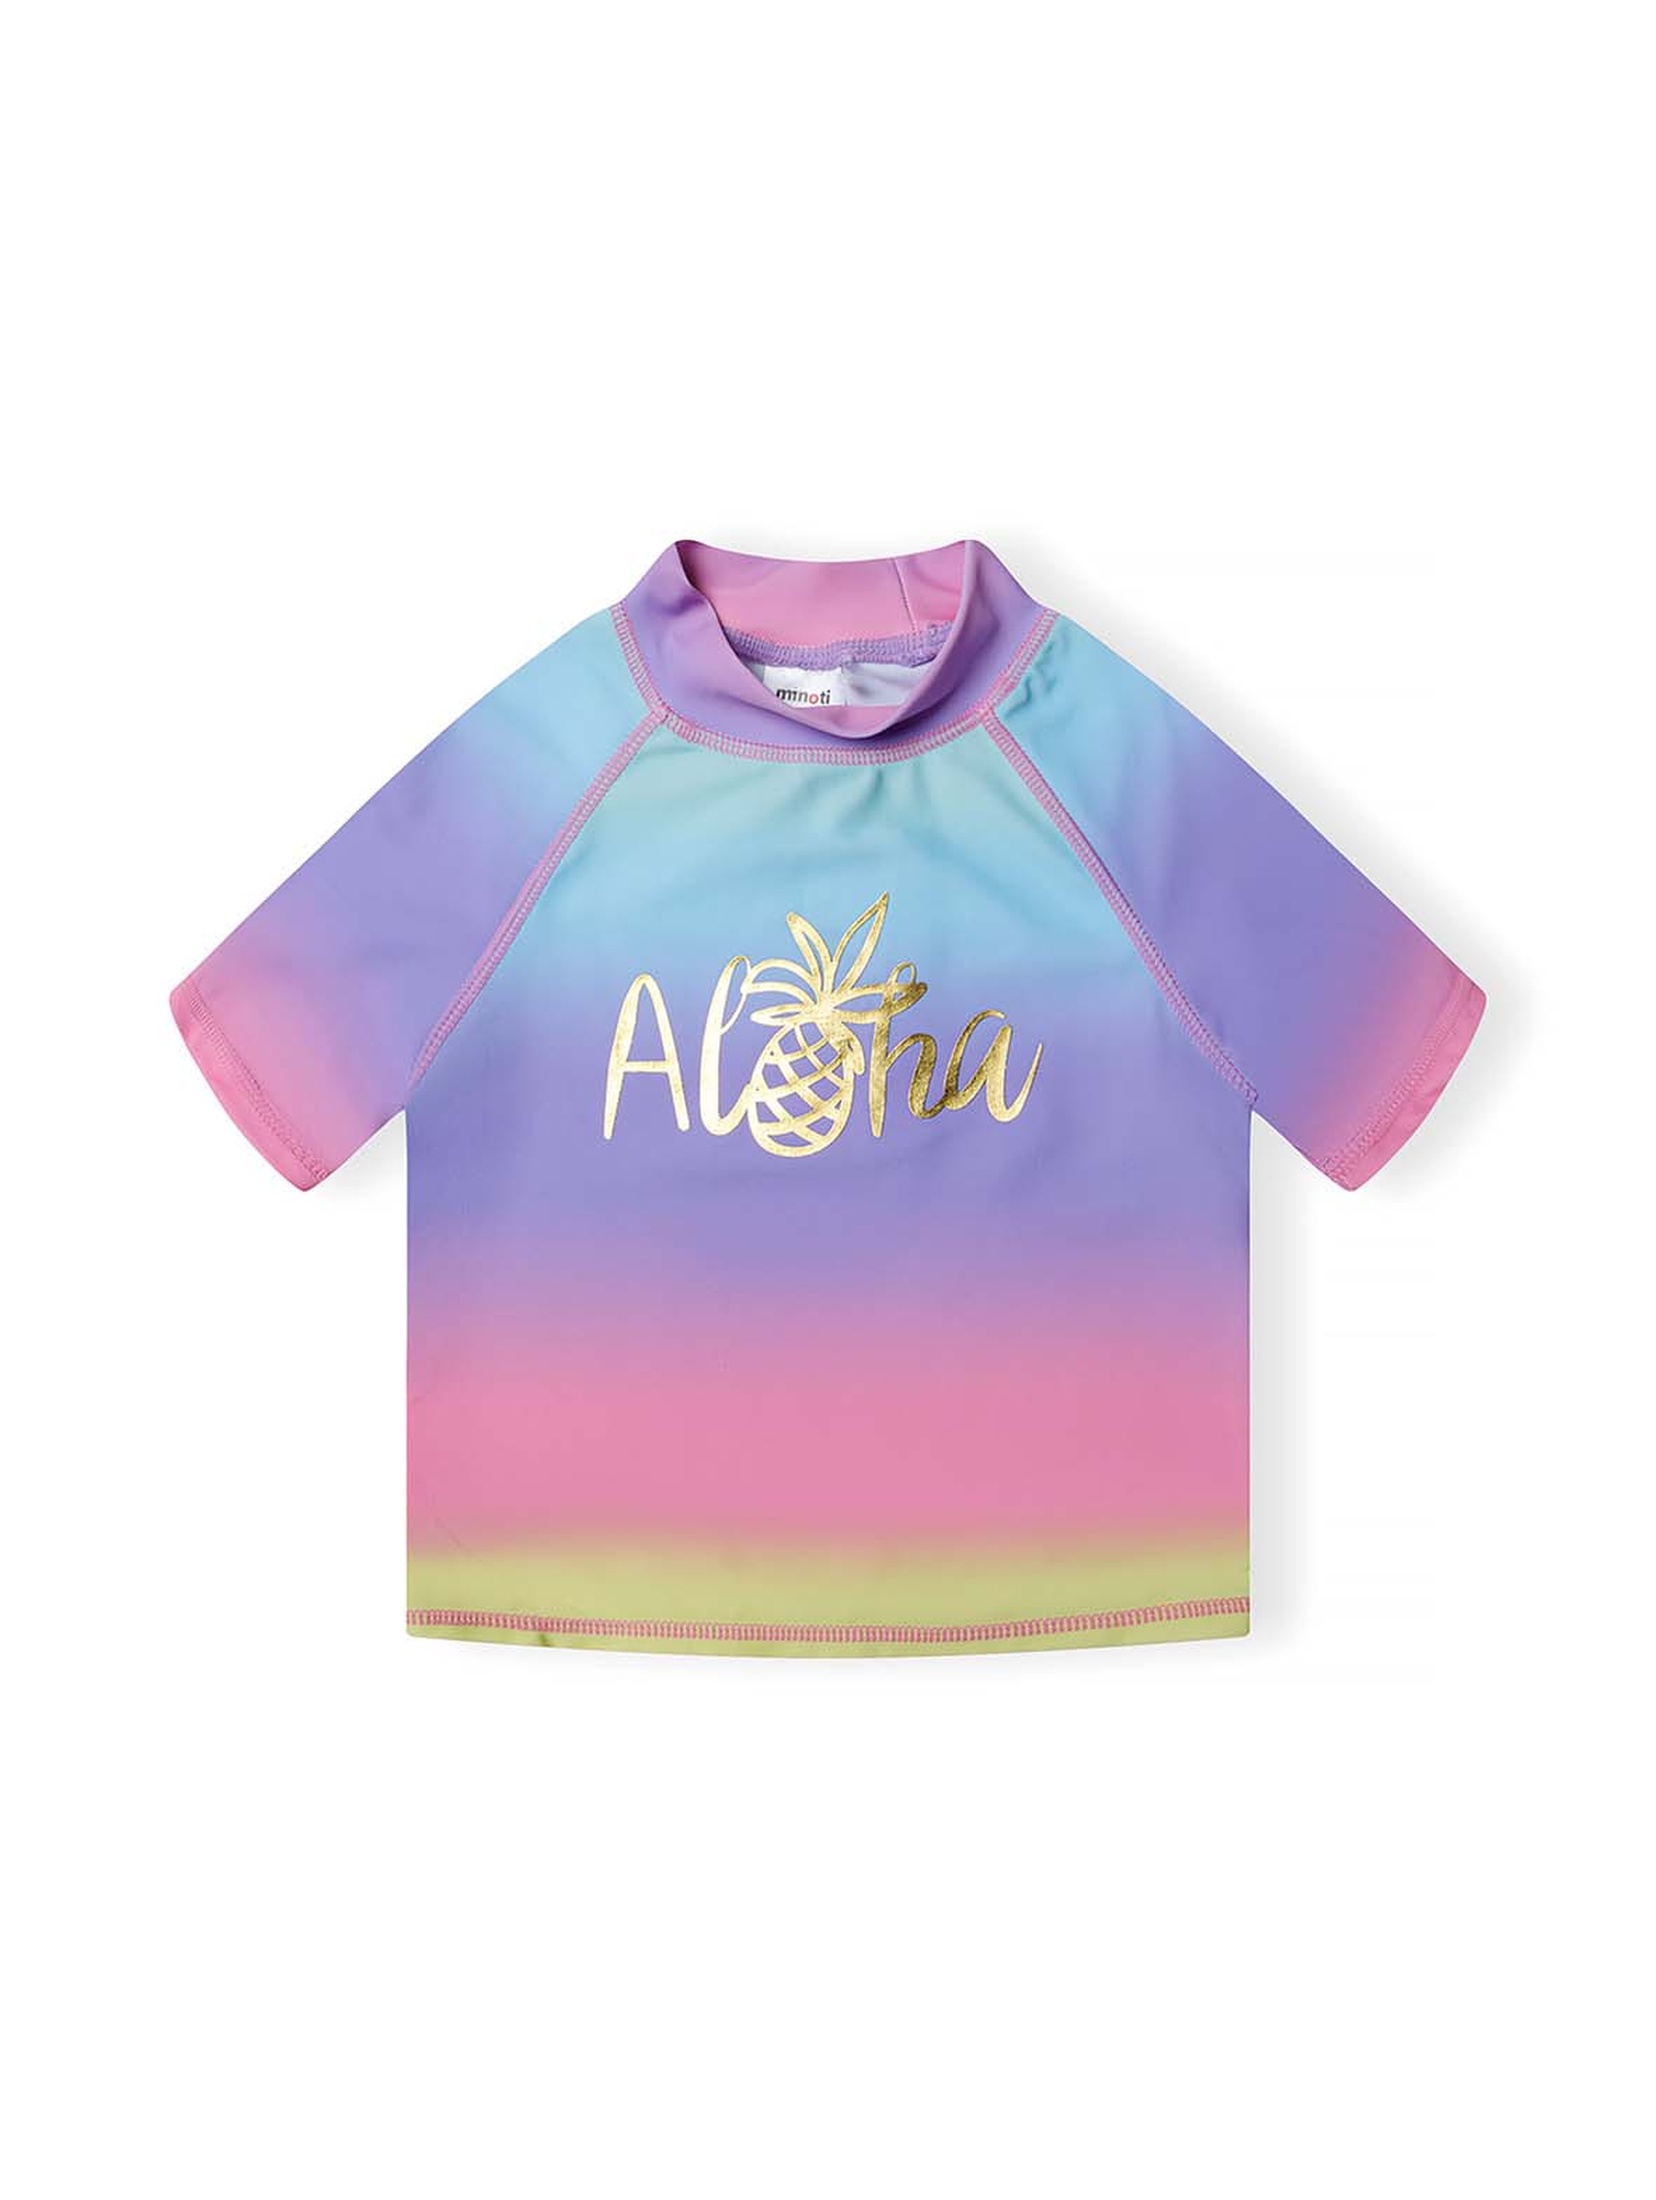 Kolorowy strój kąpielowy dziewczęcy- koszulka i majtki z filtrem UV